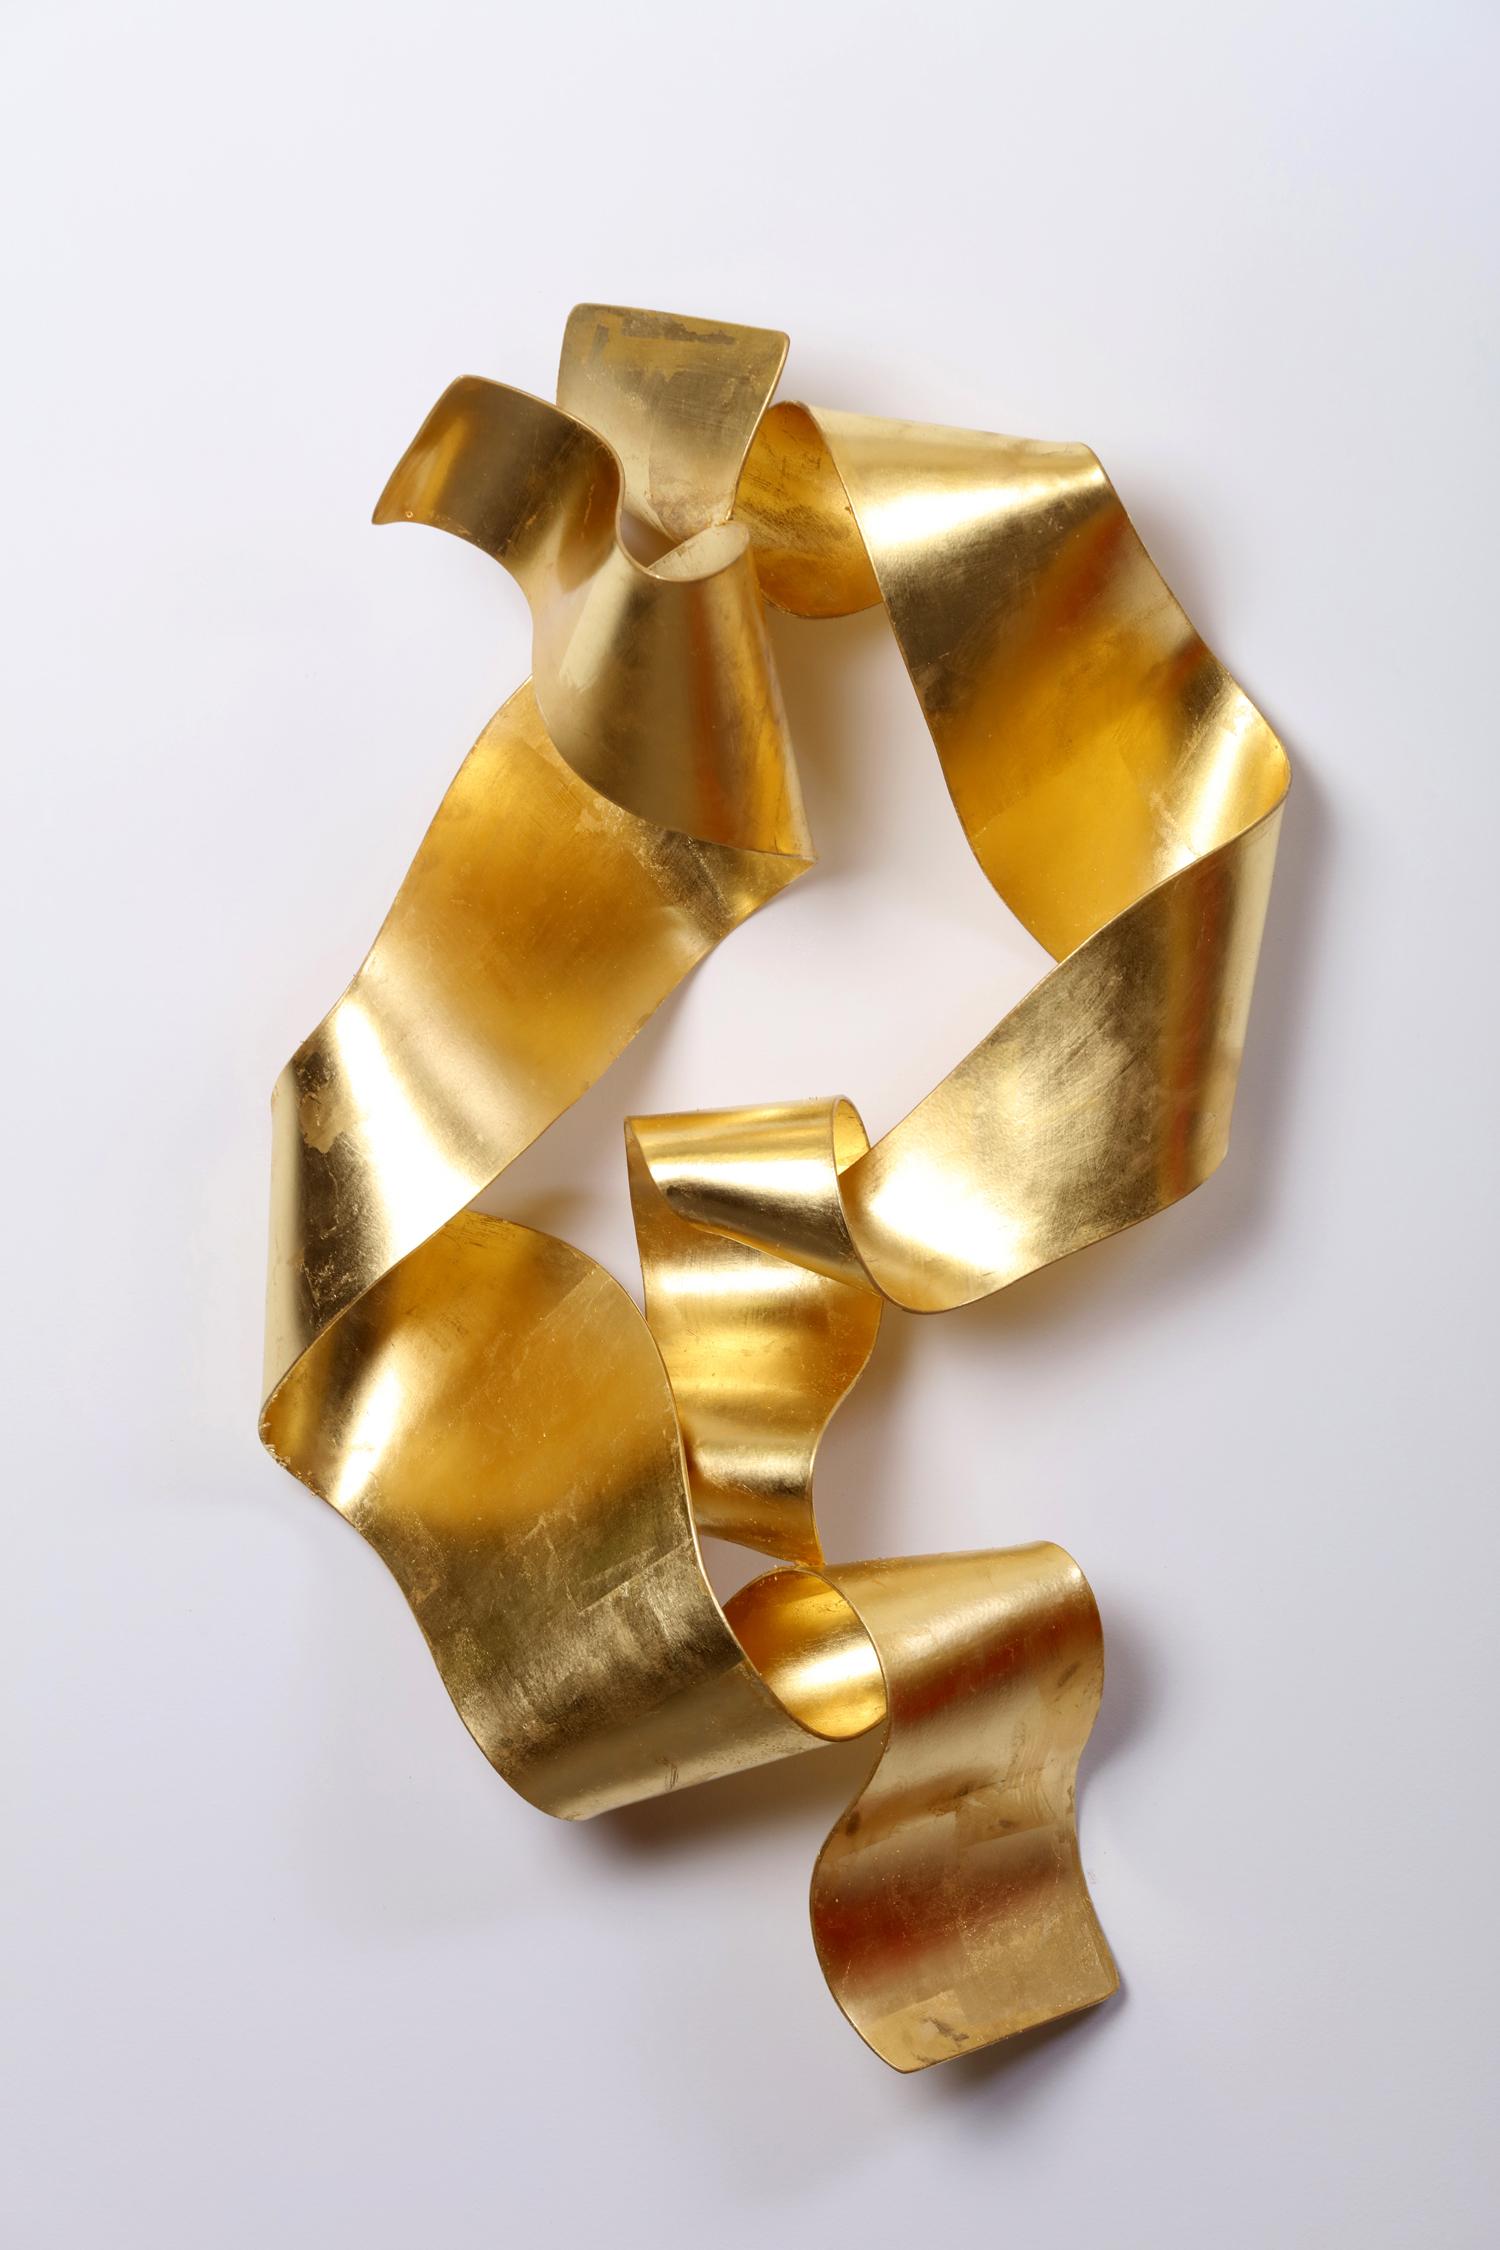 Stefan Duerst Abstract Sculpture - Soul Gate Eldorado - contemporary, ribbon, 24K gold, steel, wall sculpture